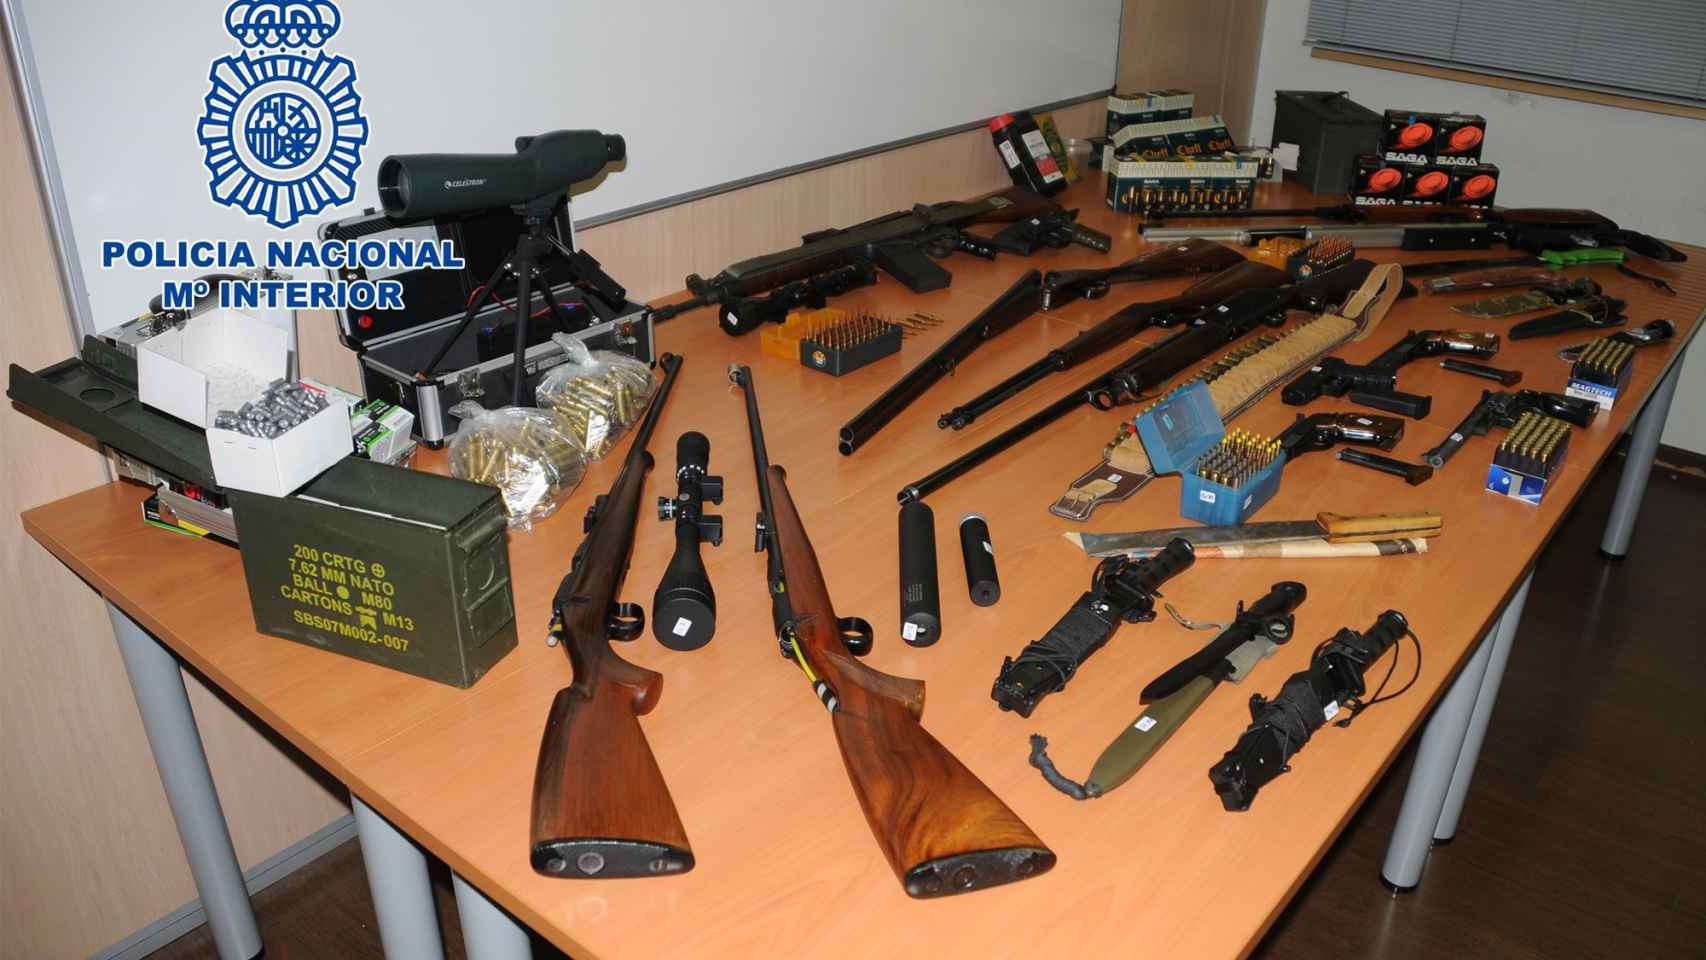 La Policía Nacional ha desmantelado este lunes un arsenal de armas de guerra en un piso de Martorell / POLICÍA NACIONAL